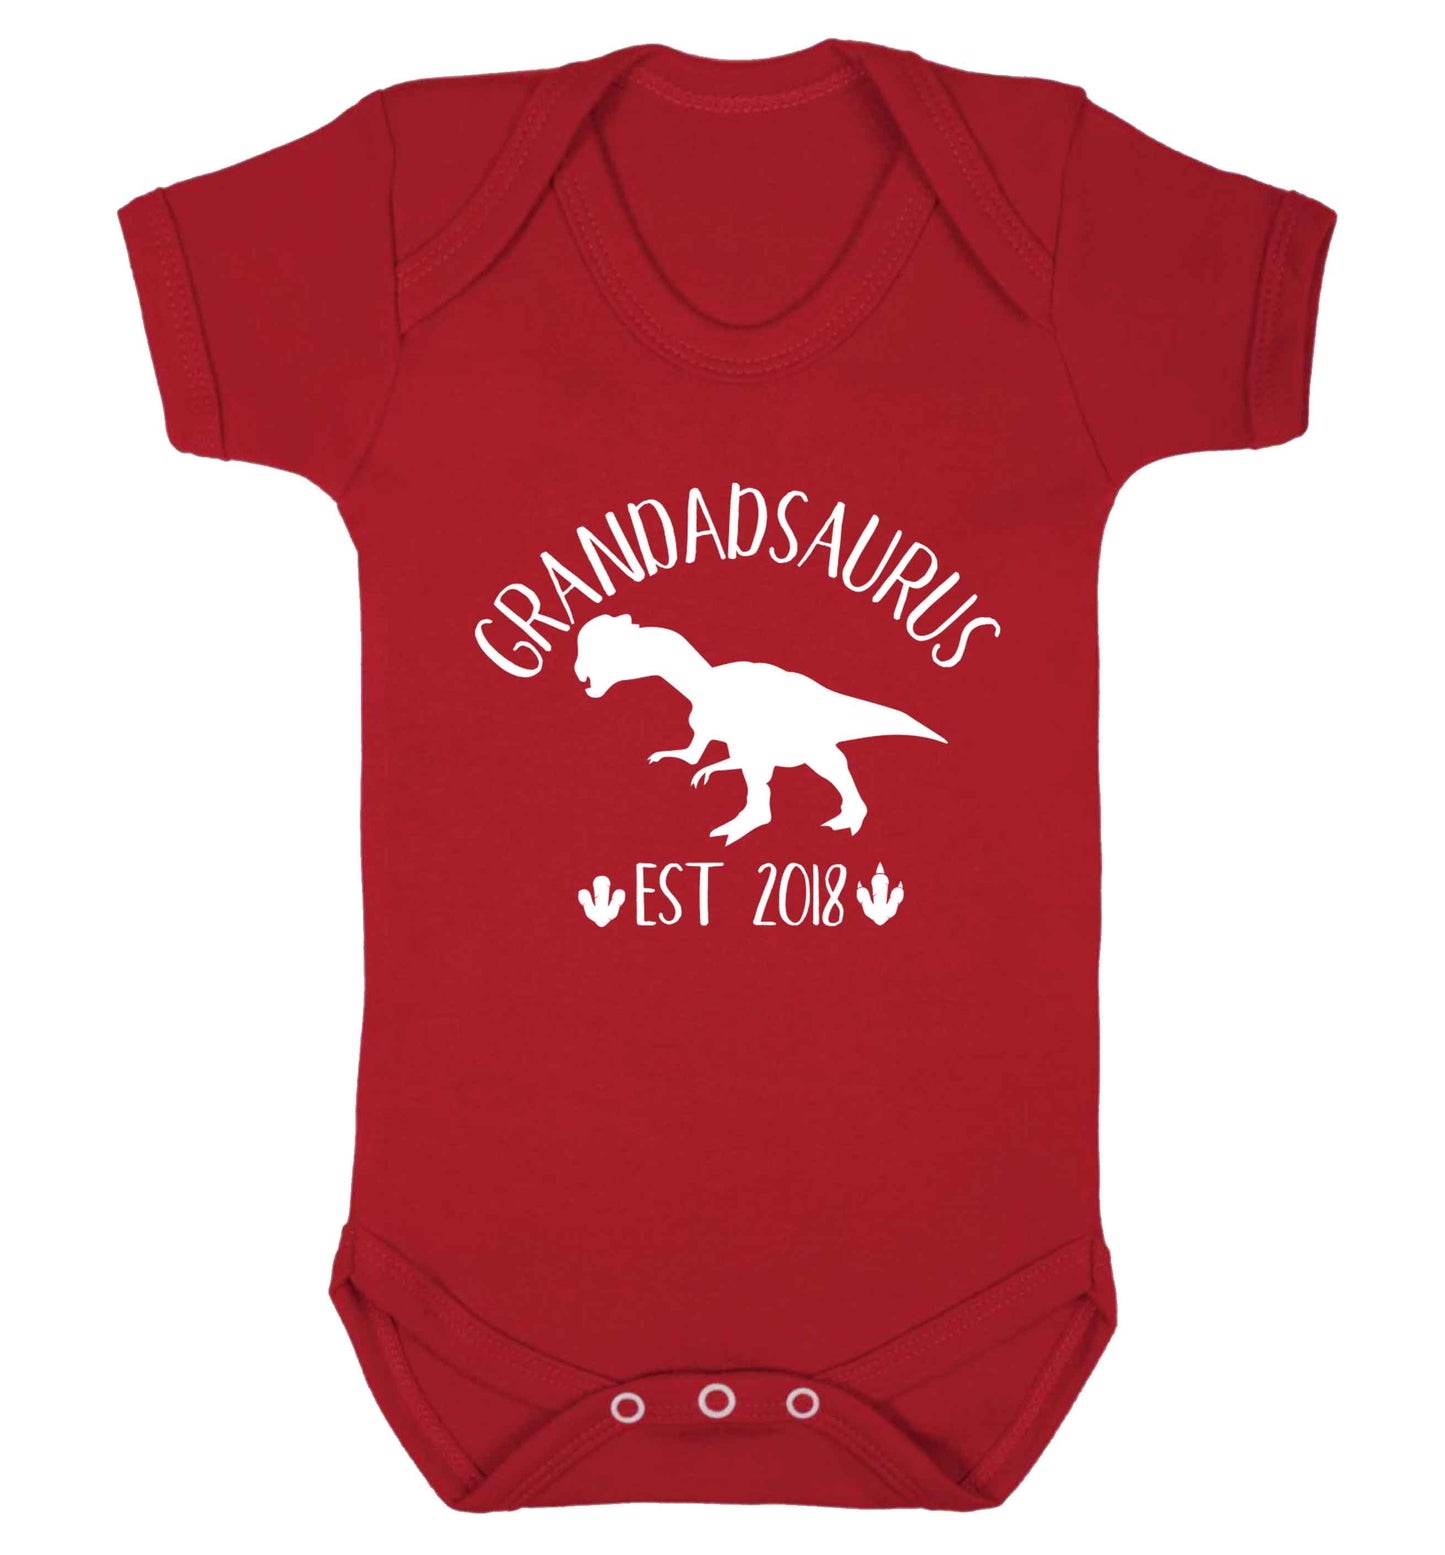 Personalised grandadsaurus since (custom date) Baby Vest red 18-24 months